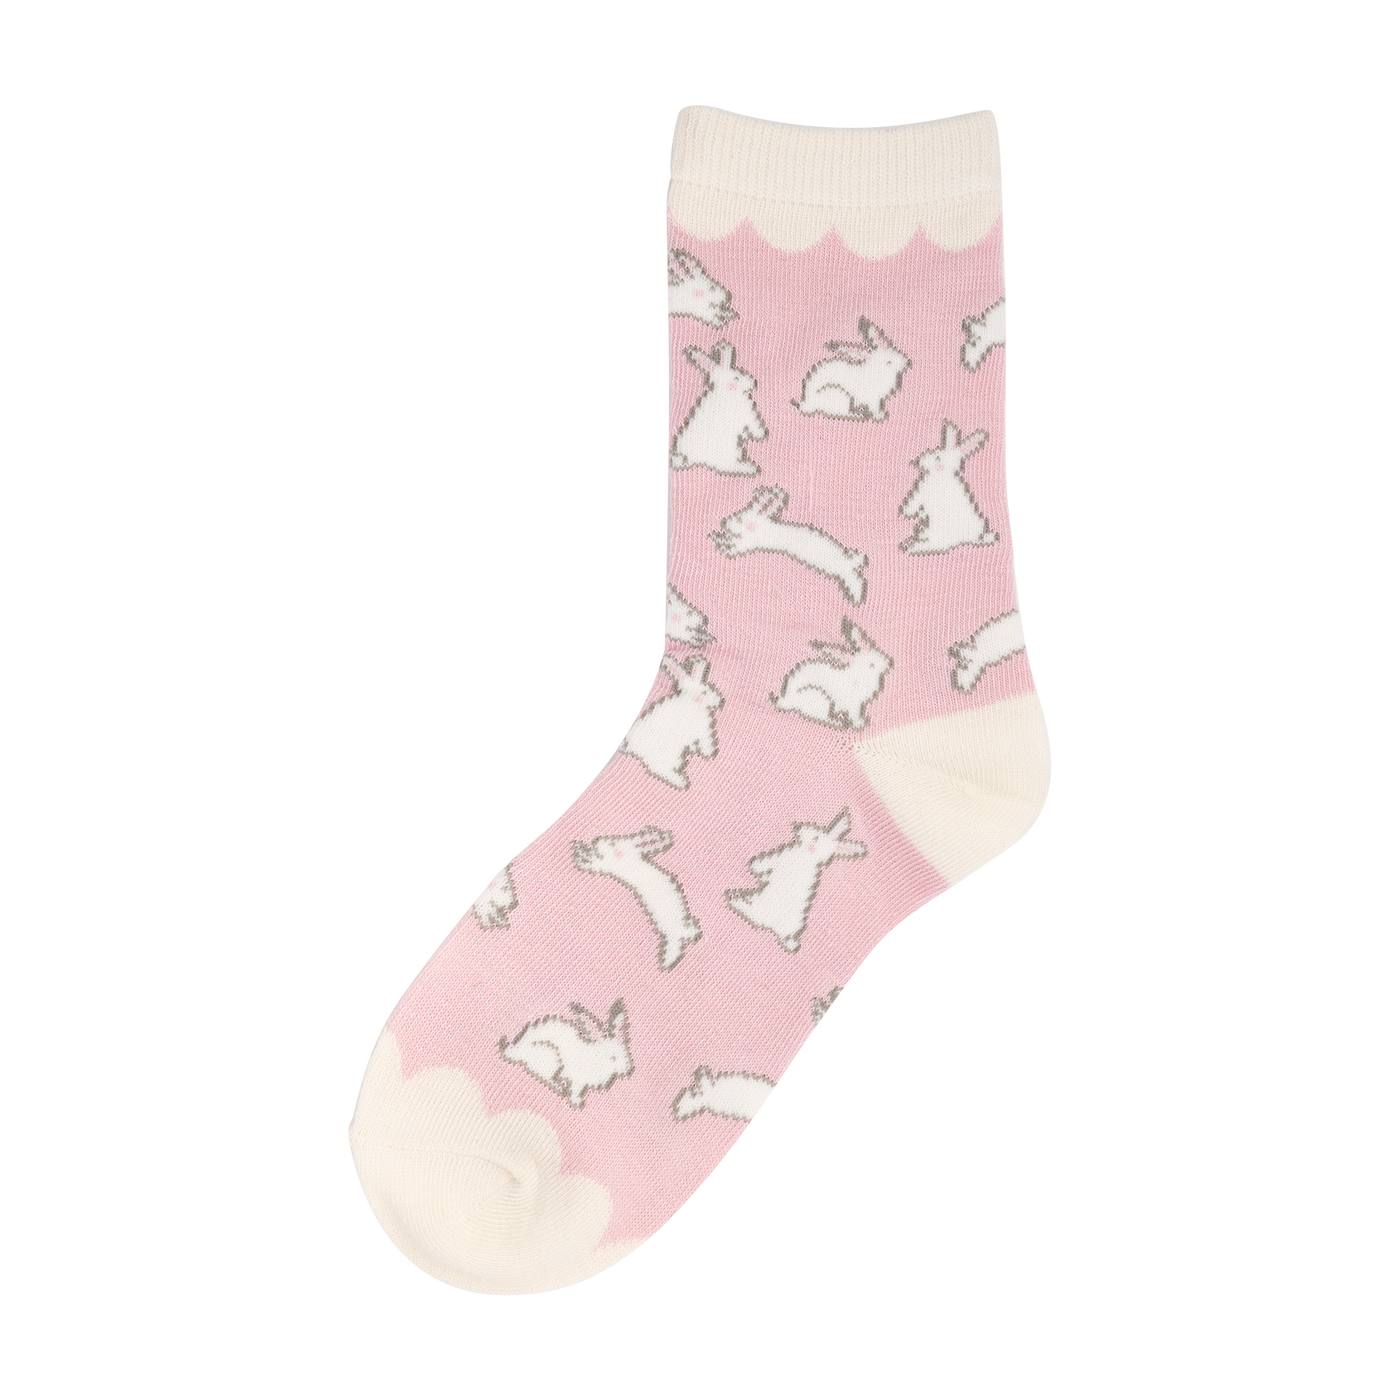 SBN1050 -  Sweet Bunnies Socks